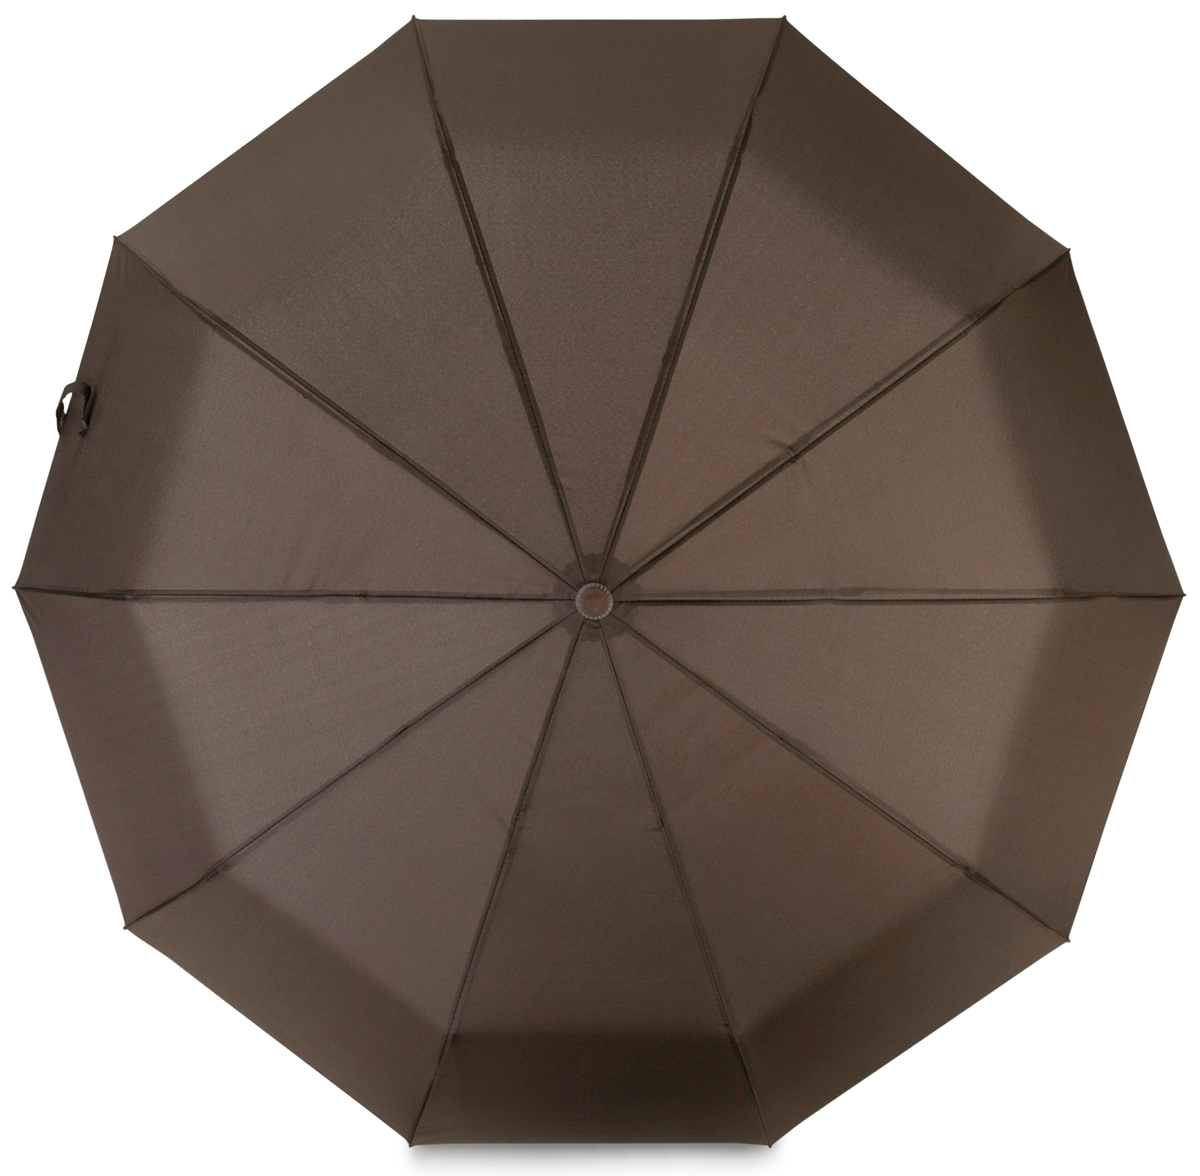 Зонт Baudet, автомат, 3 сложения, цвет: коричневый. 3074-2